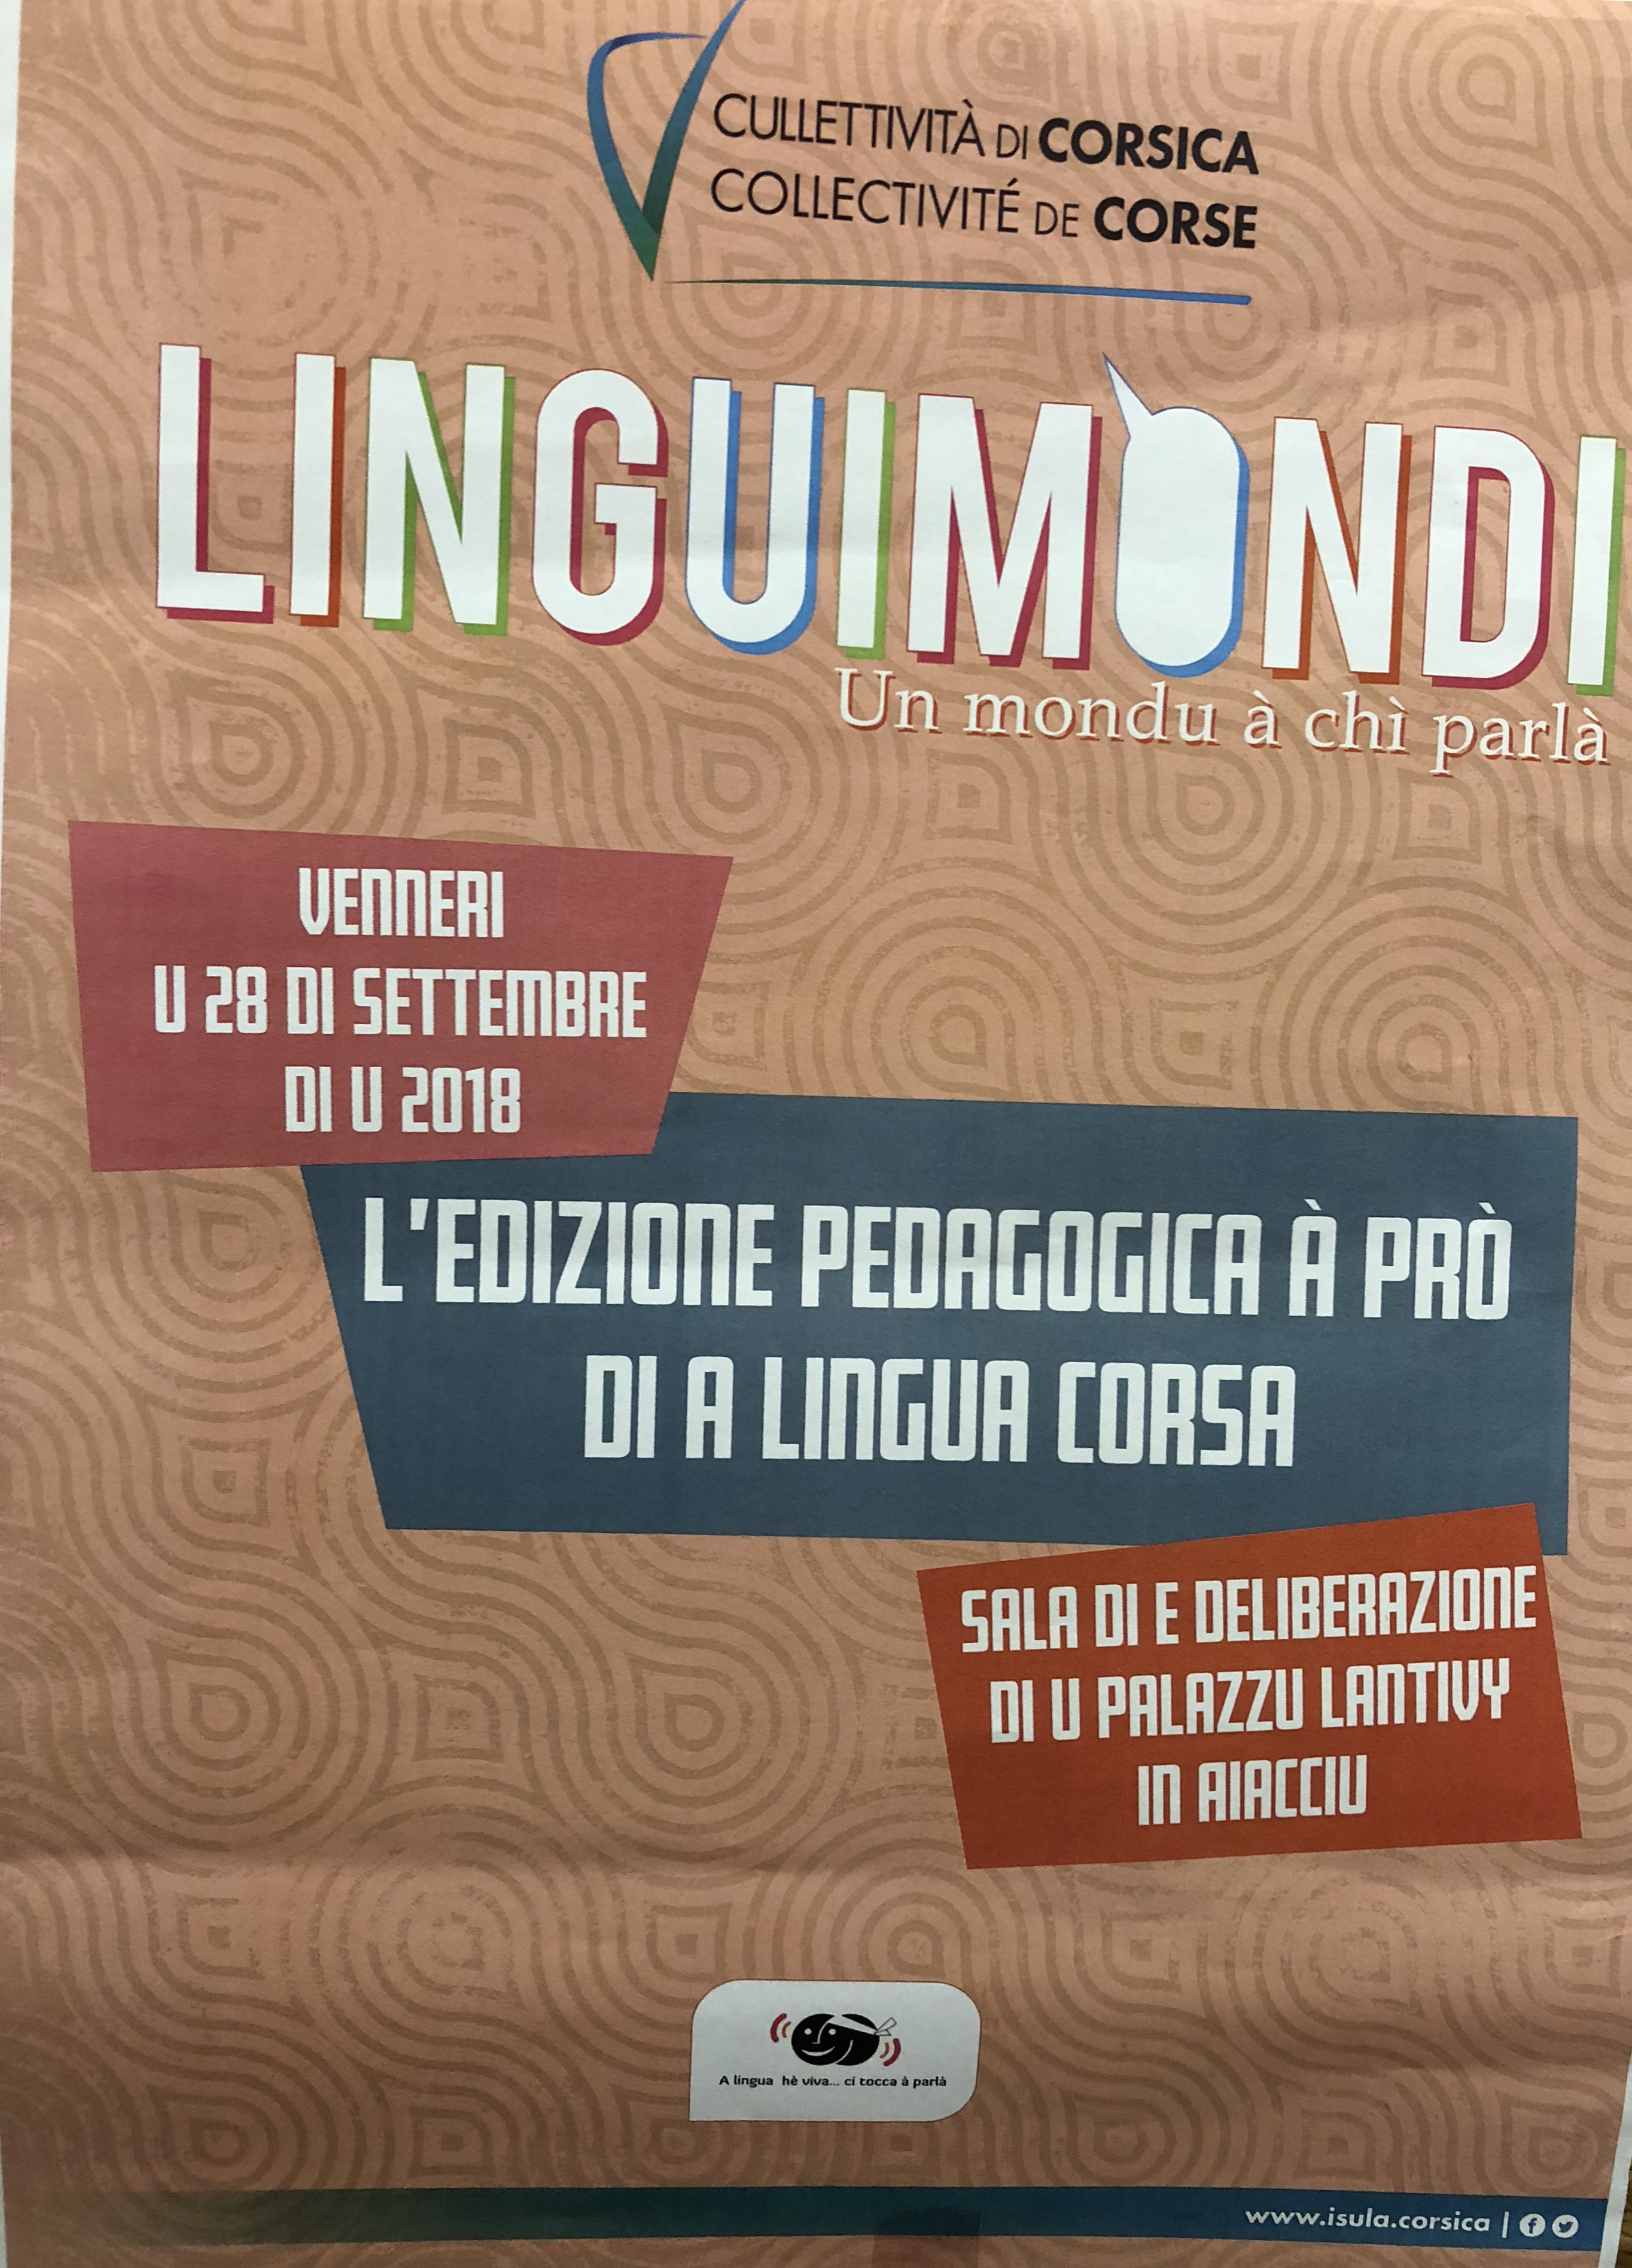 Linguimondi : scumparte e nostre sperienze è e nostre spertizie per ch'elle campinu e nostre lingue